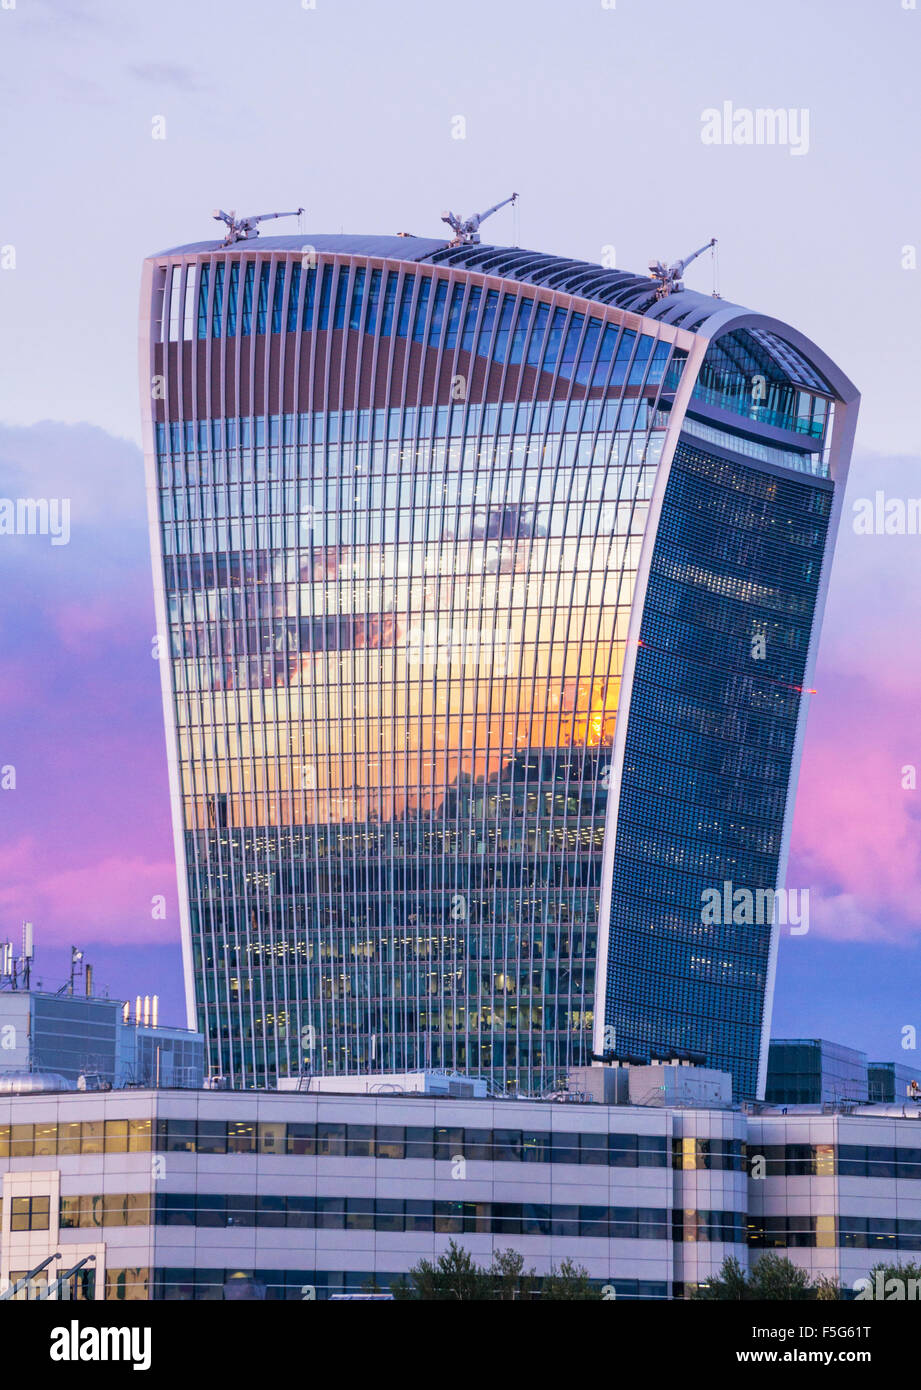 Das Walkie Talkie Wolkenkratzer Gebäude oder 20 Fenchurch Street bei Sonnenuntergang Stadt London England UK GB EU Europas Stockfoto